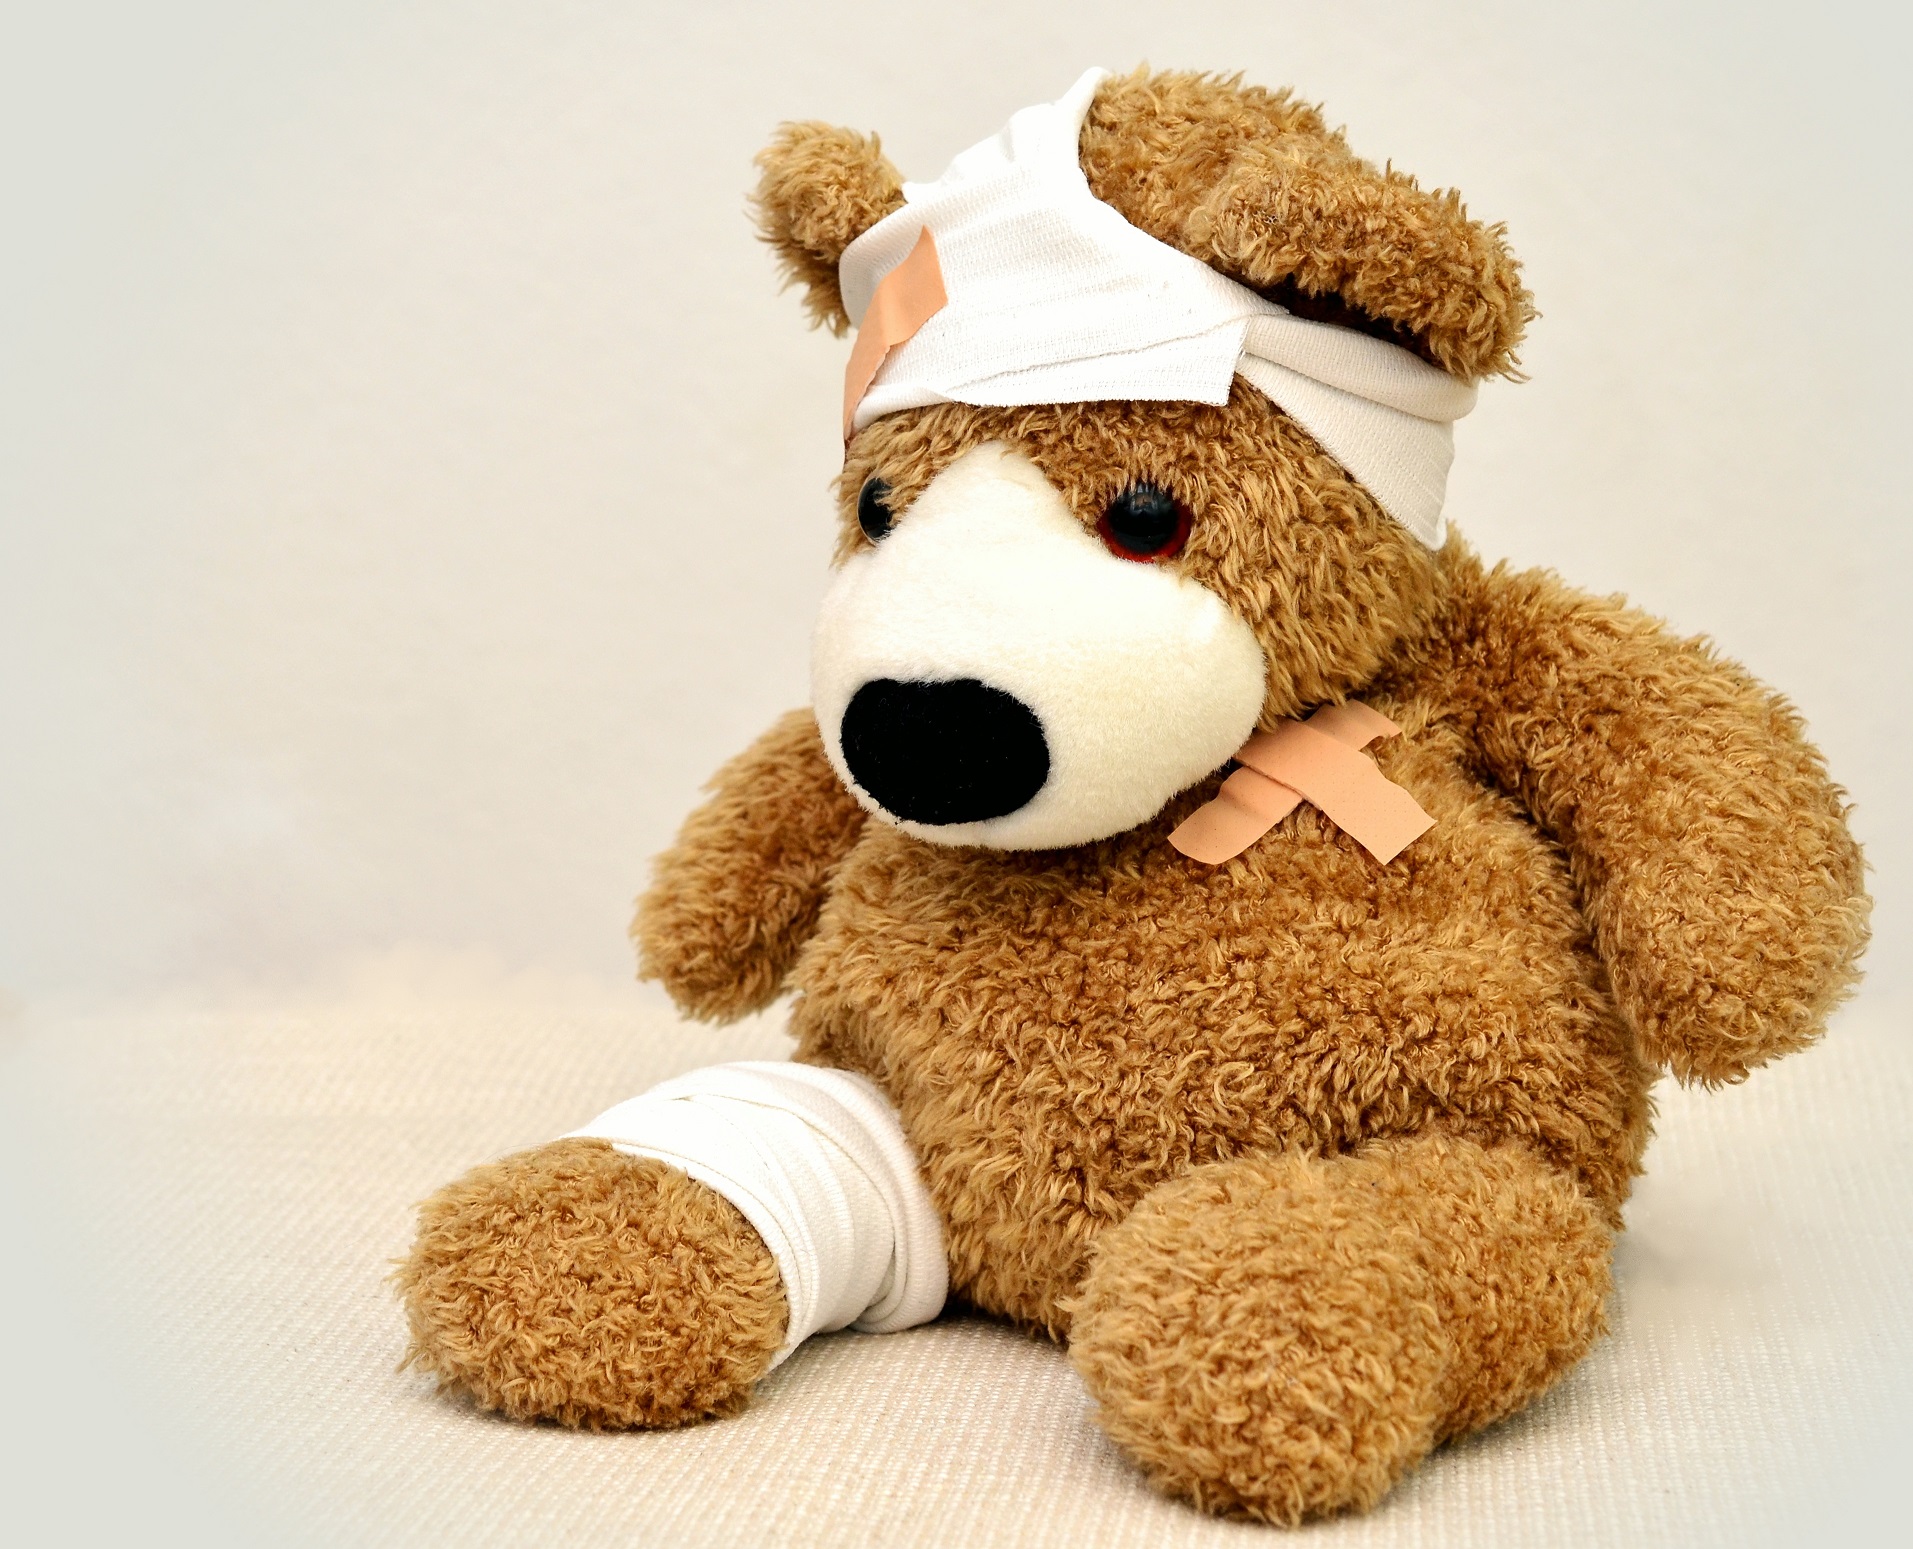 injured bear